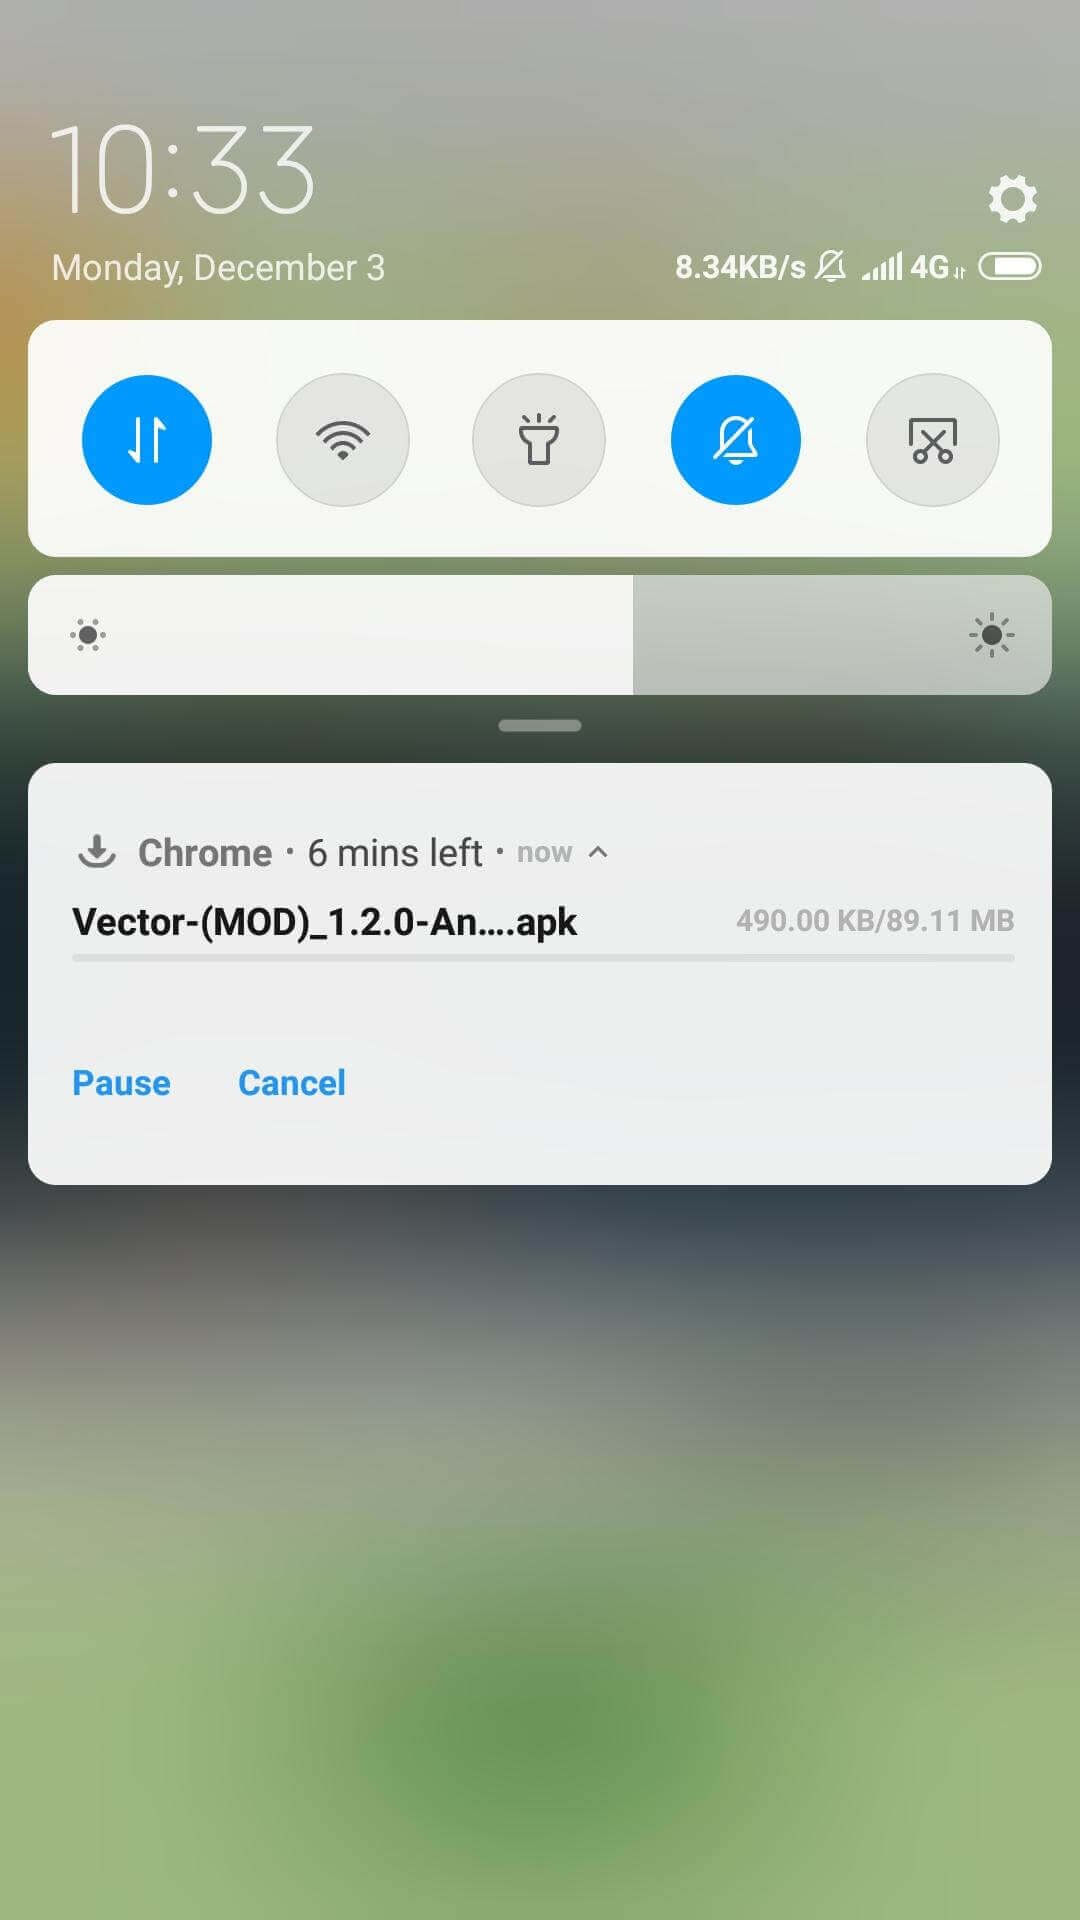 Vector Mod Apk downloading started